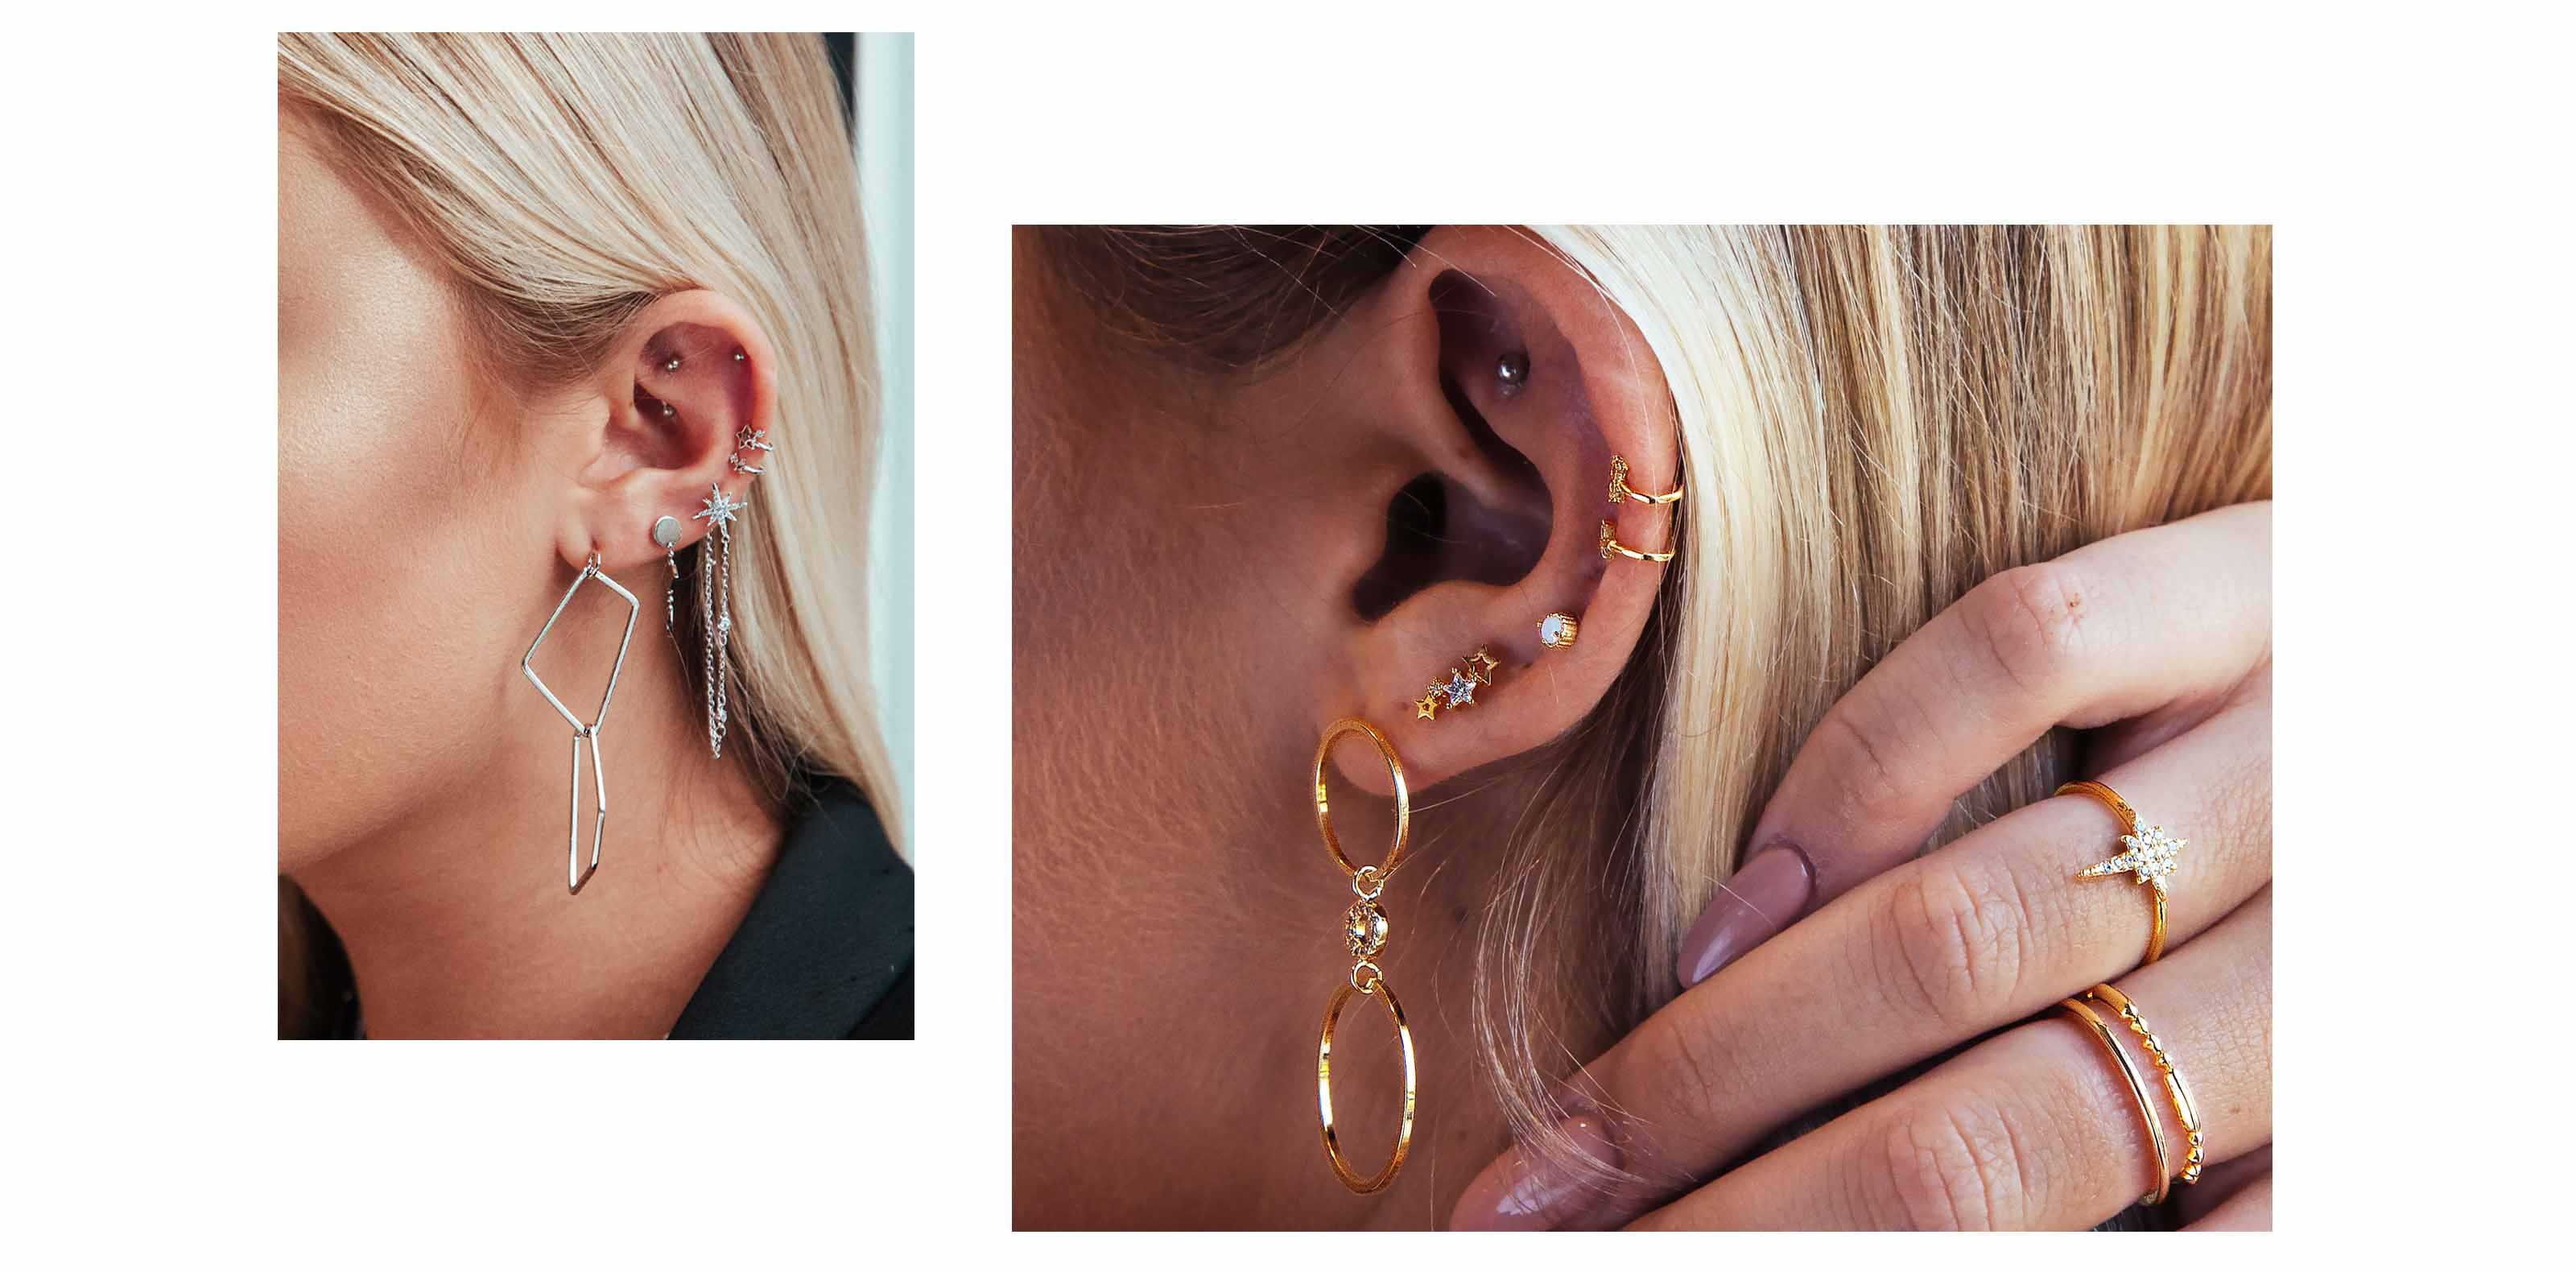 curated ear piercings